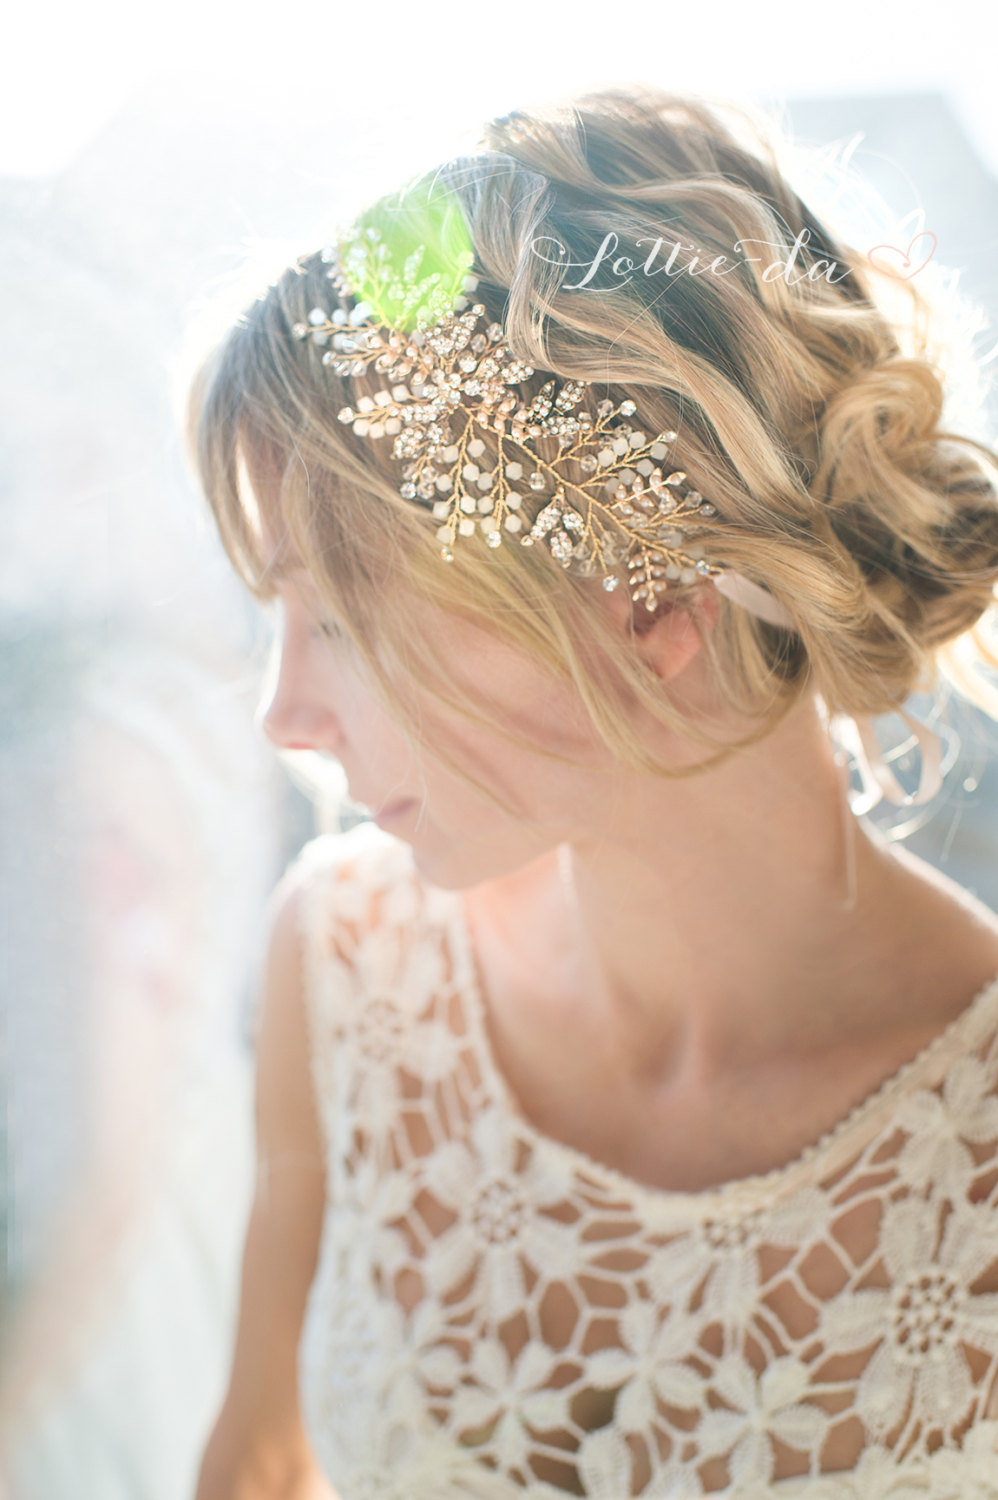 Leaf Wedding Headband / Headpiece by Lottie-da Designs | https://emmalinebride.com/2016-giveaway/leaf-wedding-headband/